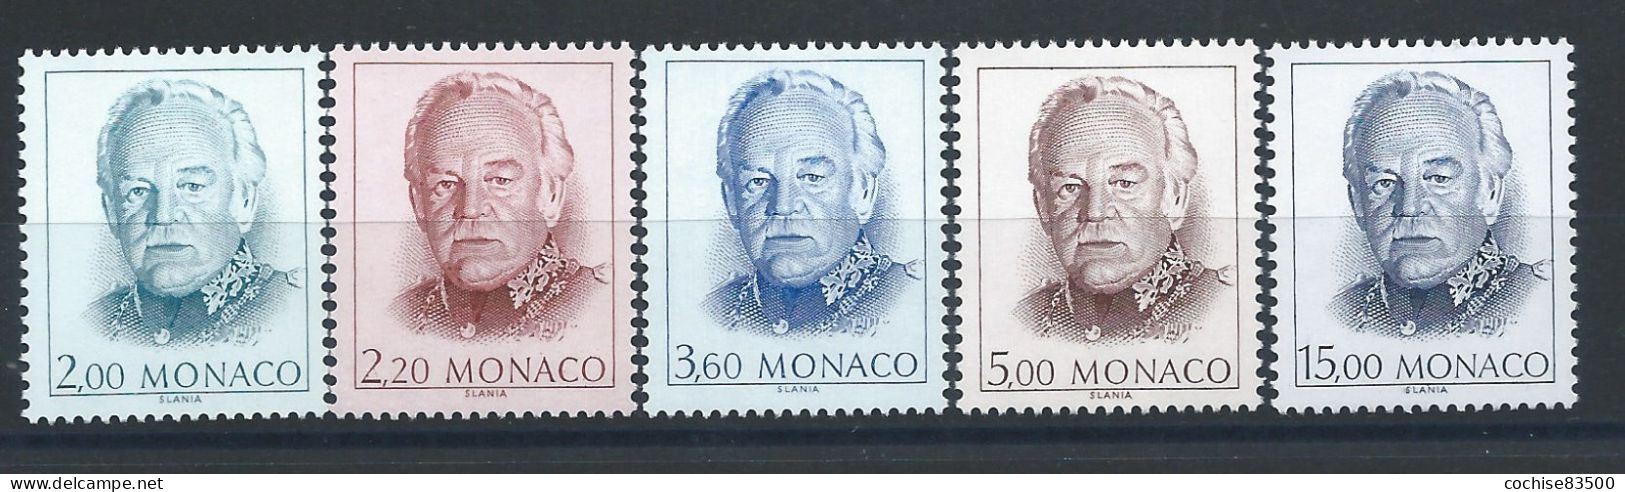 Monaco N°1671/75** (MNH) 1989 - Prince Rainier III - Nuovi